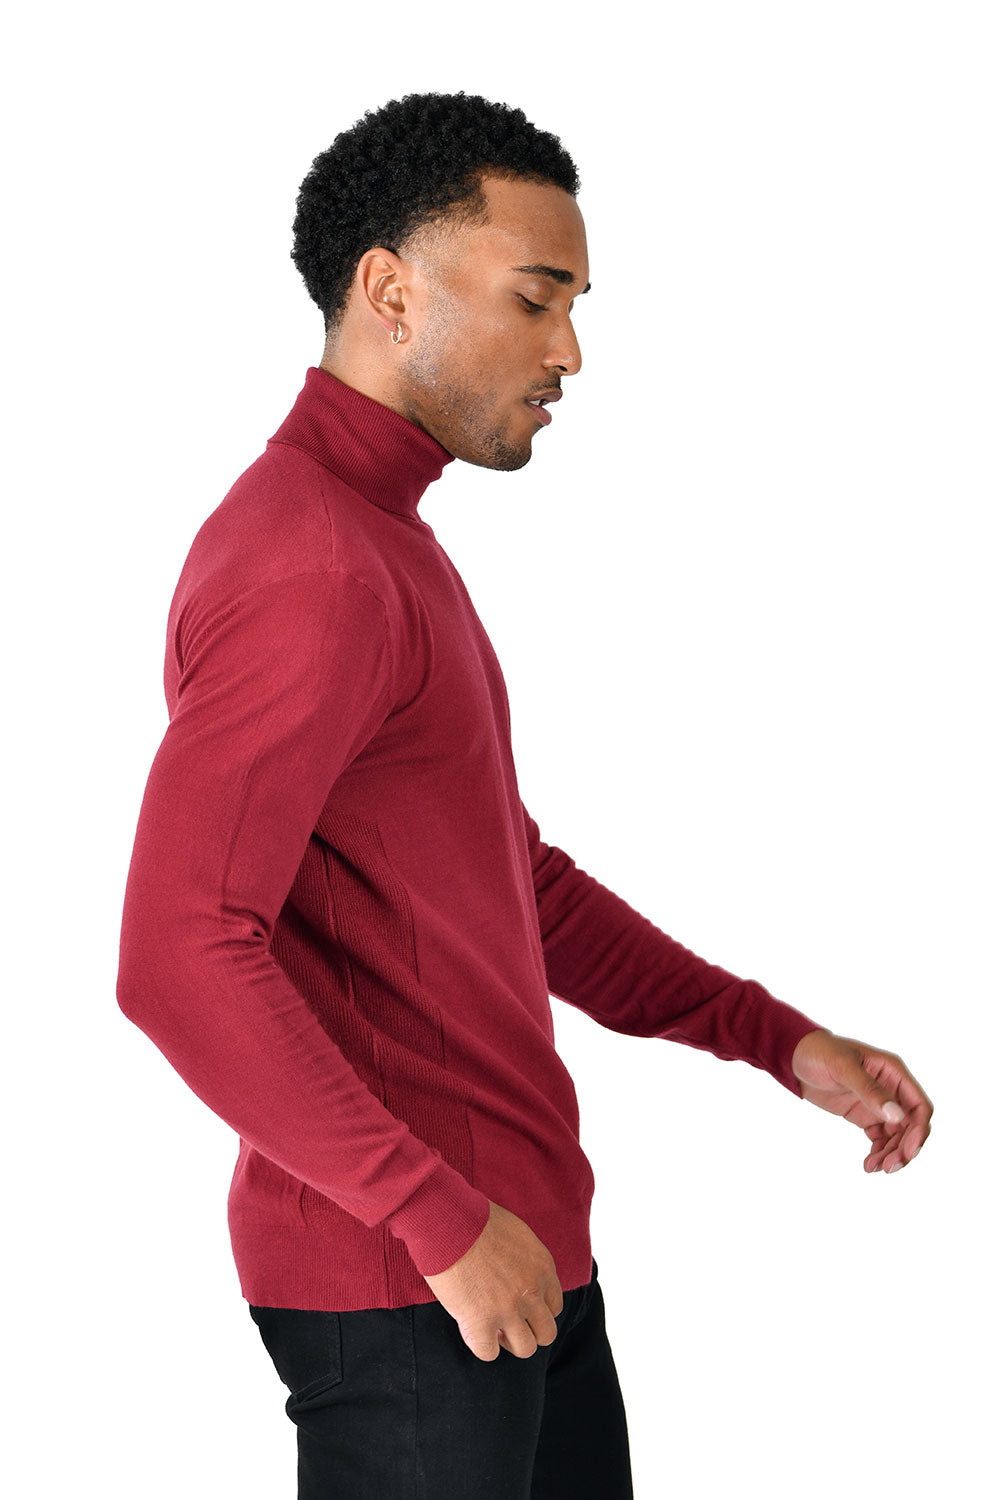 Men's Turtleneck Ribbed Solid Color Basic Sweater LS2100 Wine